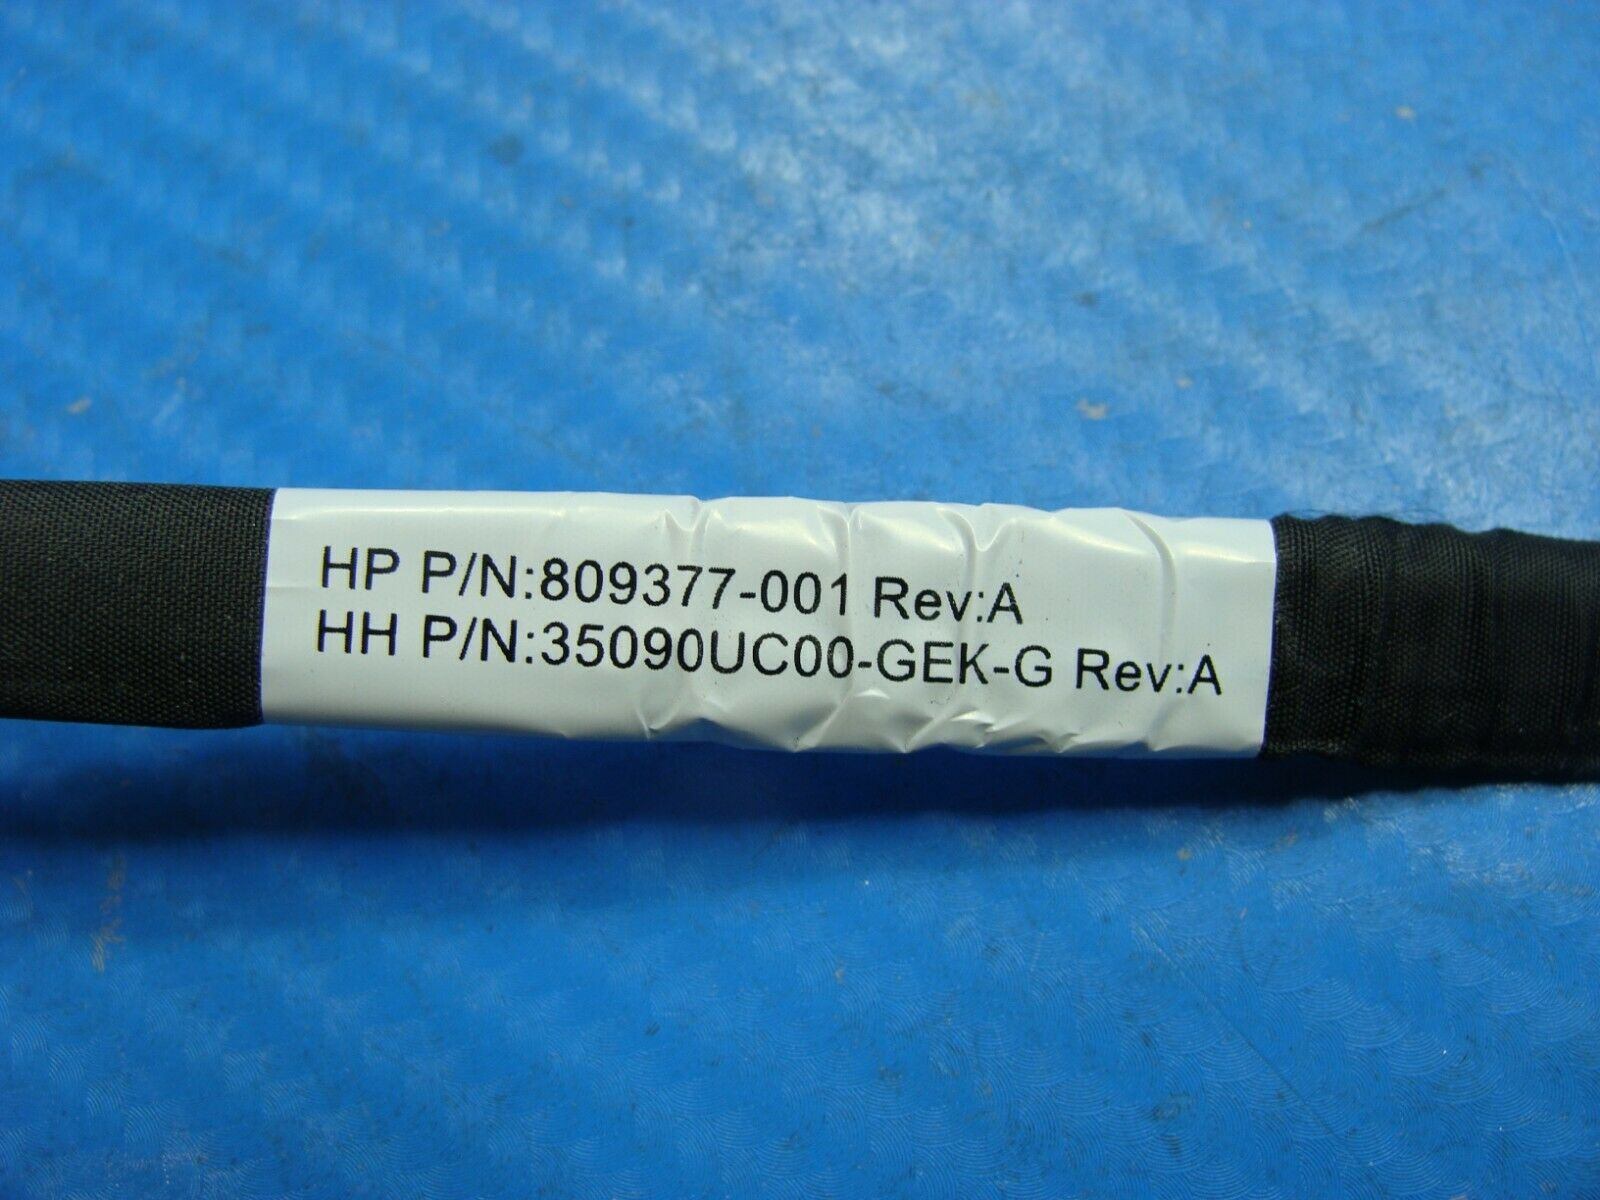 HP Envy 750-137c Genuine Desktop Data Optical DVD Drive Cable 809377-001 - Laptop Parts - Buy Authentic Computer Parts - Top Seller Ebay